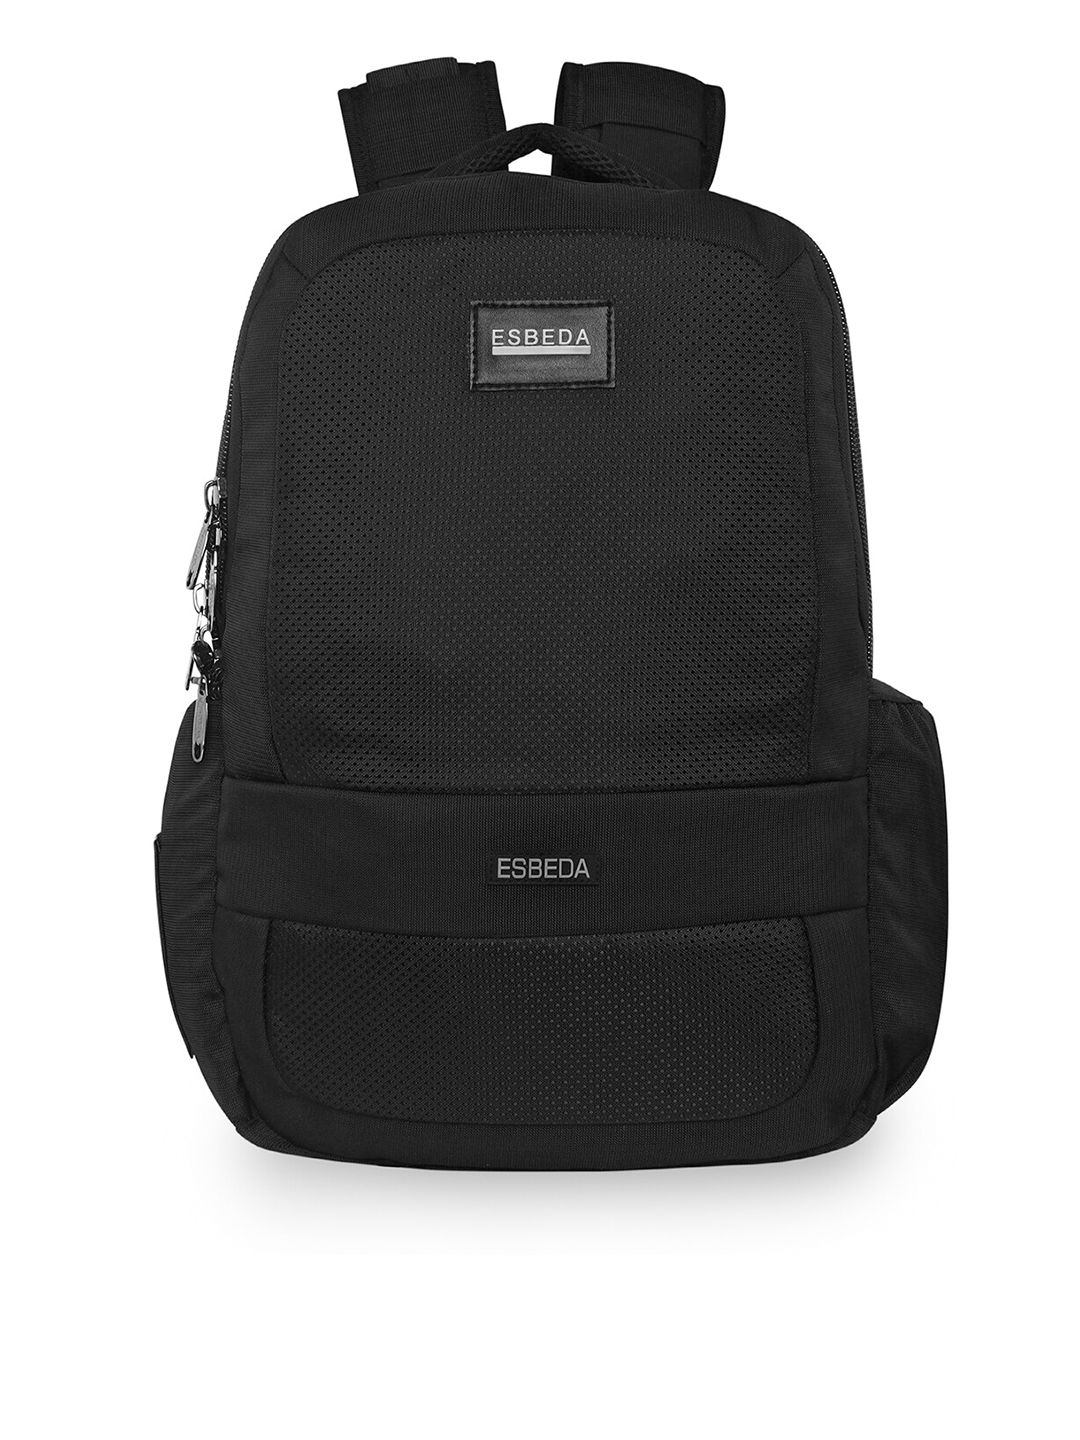 ESBEDA Unisex Black Lightweight Waterproof Backpack Price in India